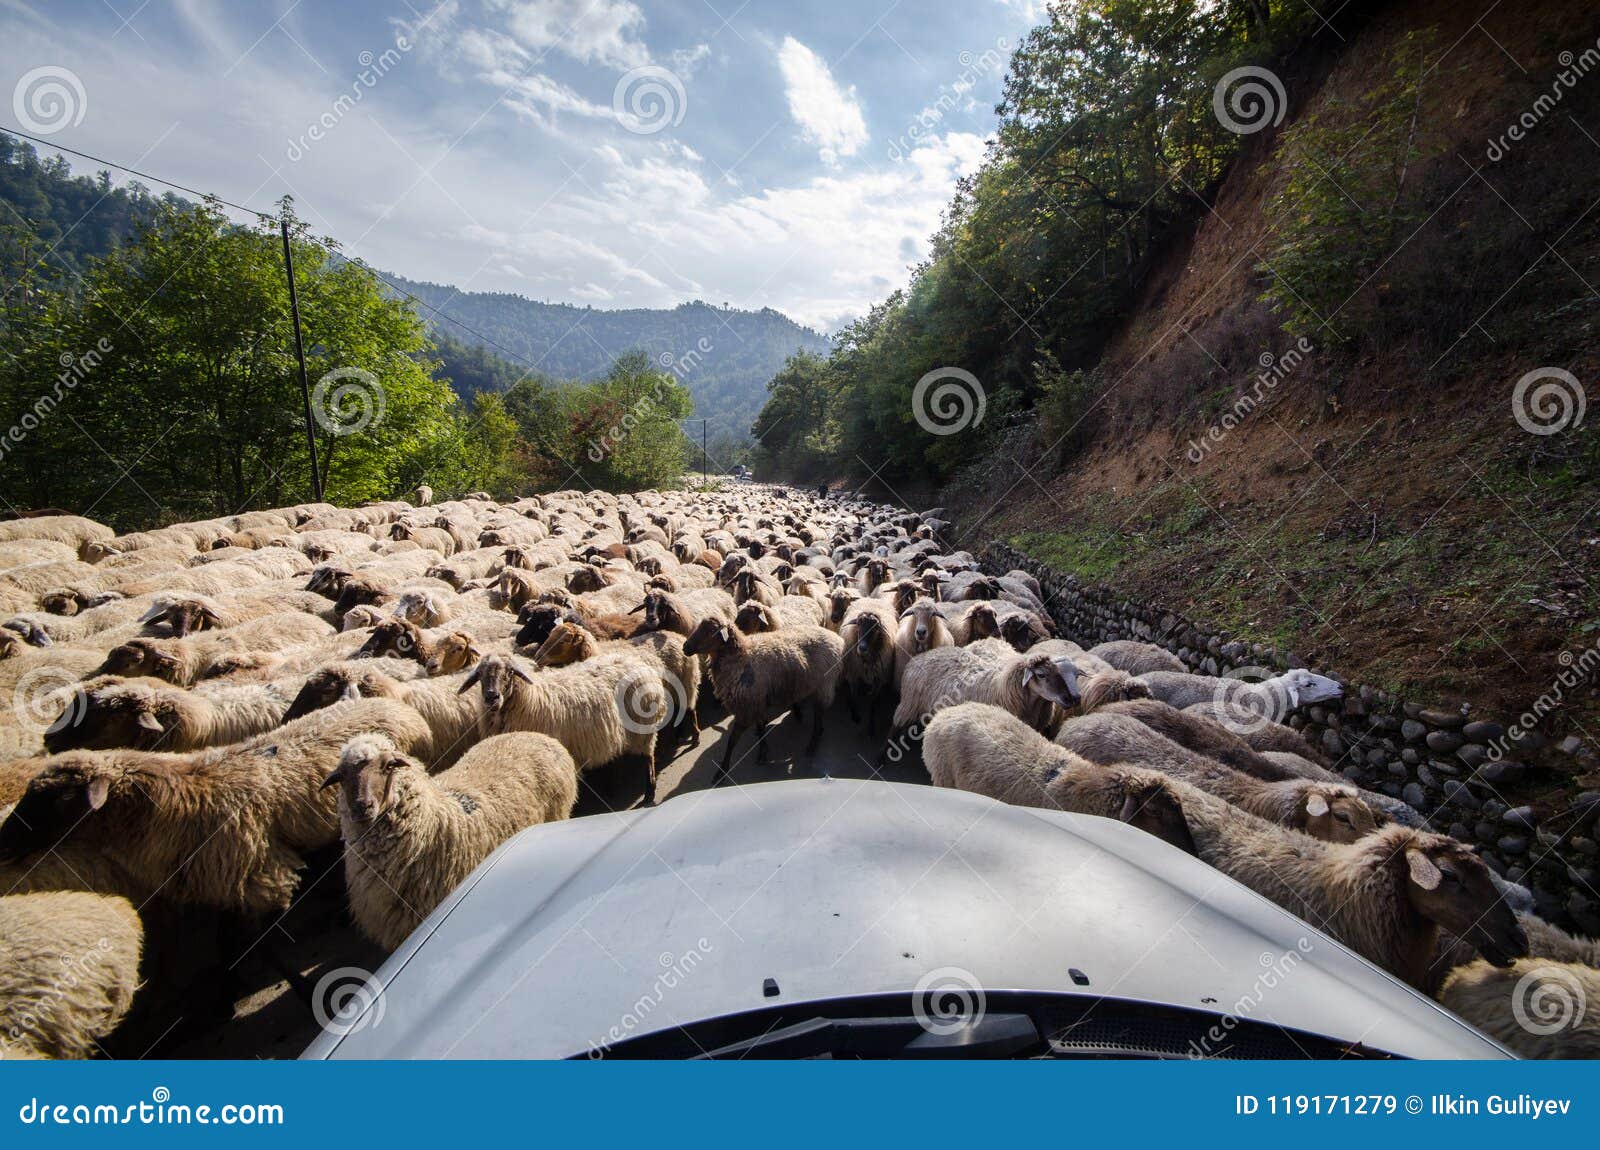 το αυτοκίνητο φωτογραφικών μηχανών που φαίνεται ένα πλάνο οδικών αγροτικό κουρευμένο προβάτων περασμάτων έγειρε να δοκιμάσει την κάθετη όψη Ένα πρόβατο εξετάζει τη κάμερα Χρόνος φθινοπώρου του Αζερμπαϊτζάν Masalli